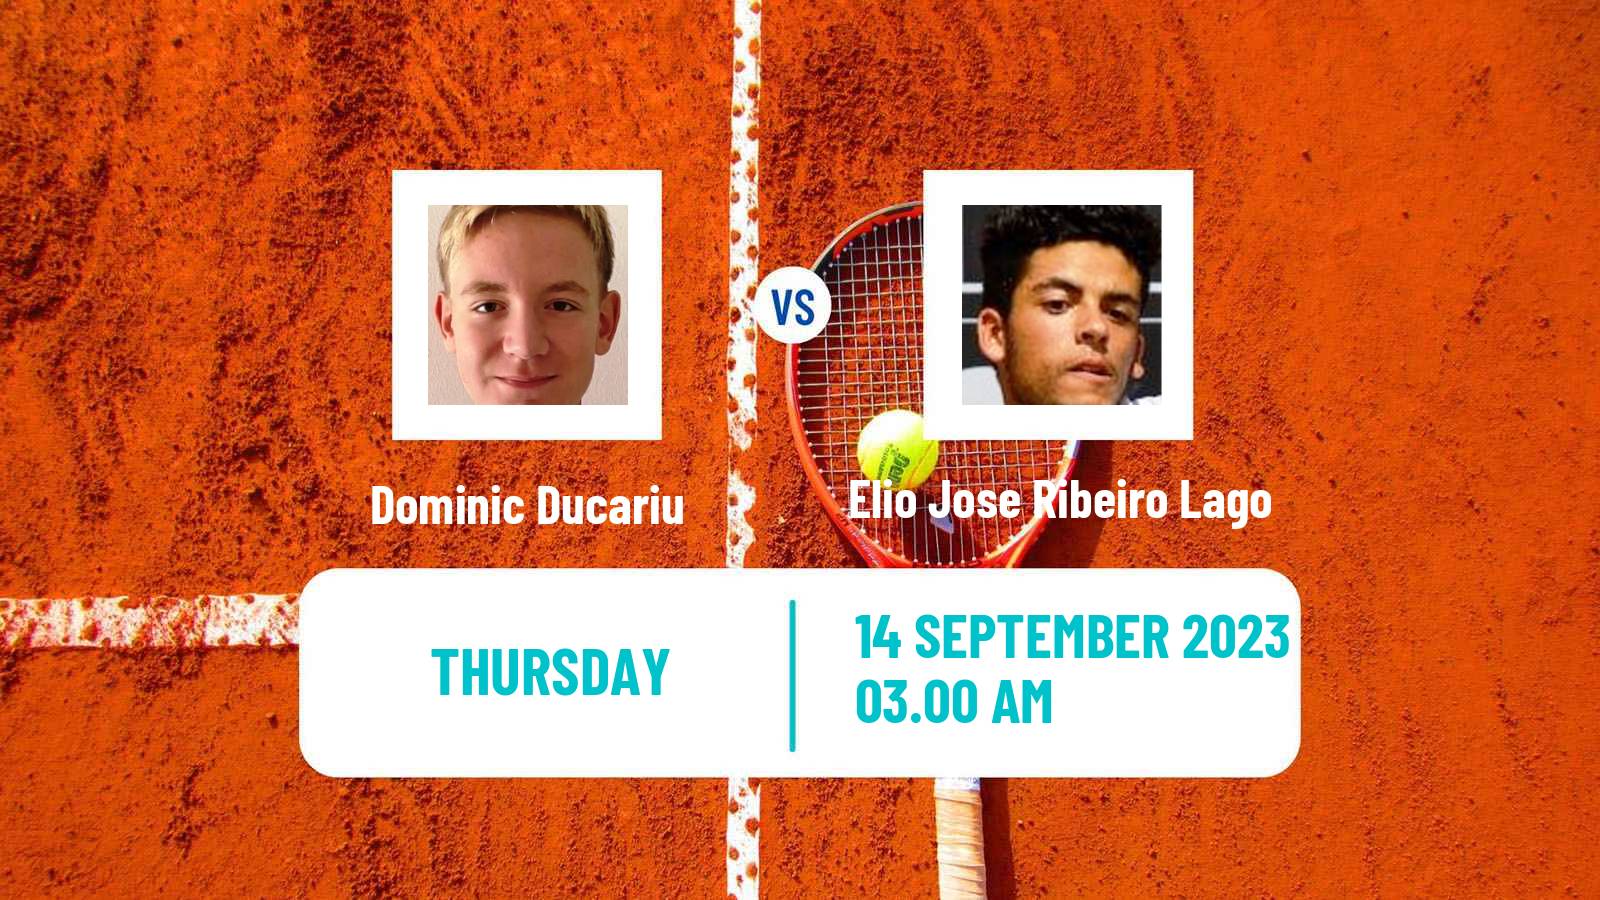 Tennis ITF M15 Satu Mare Men Dominic Ducariu - Elio Jose Ribeiro Lago